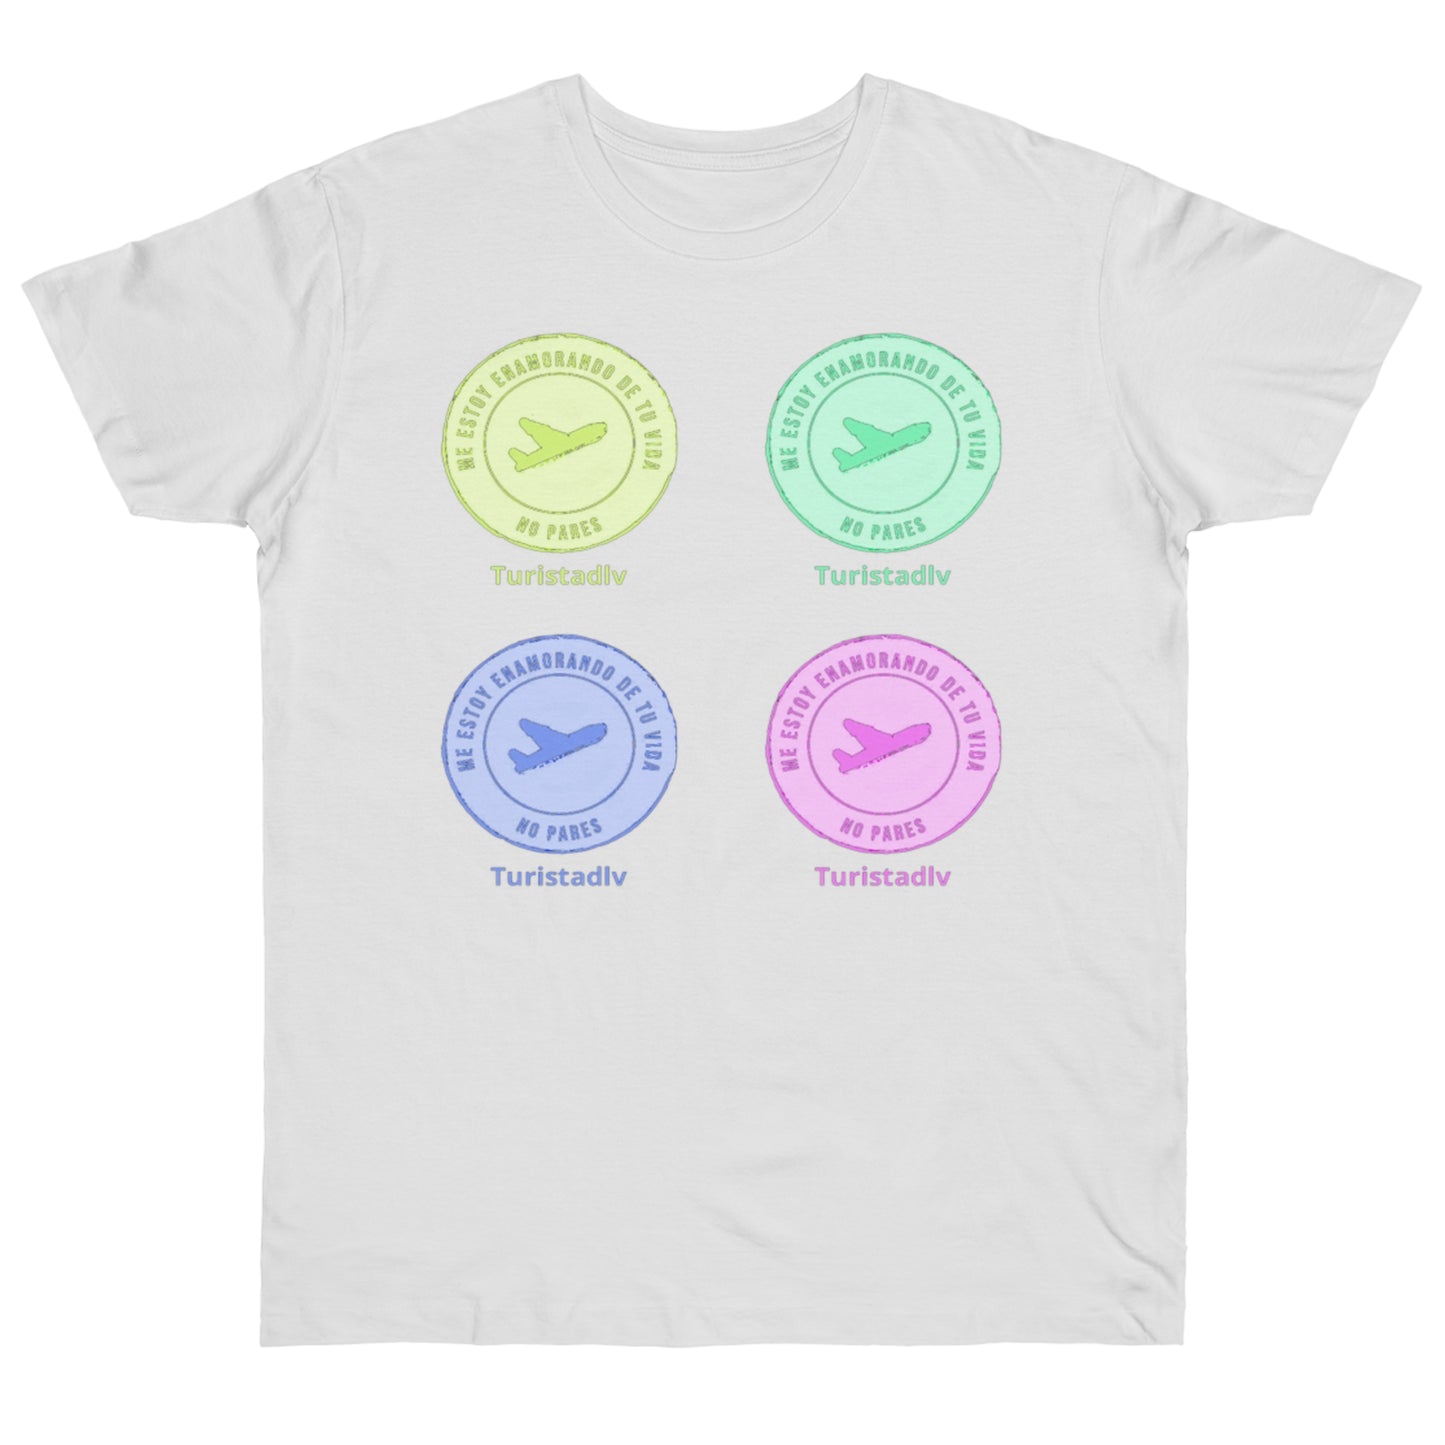 Camiseta de avión, camiseta de piloto, camisa de viajero, camiseta inspiradora, camiseta de viajero, regalo viajero, aviación, camisa viaje